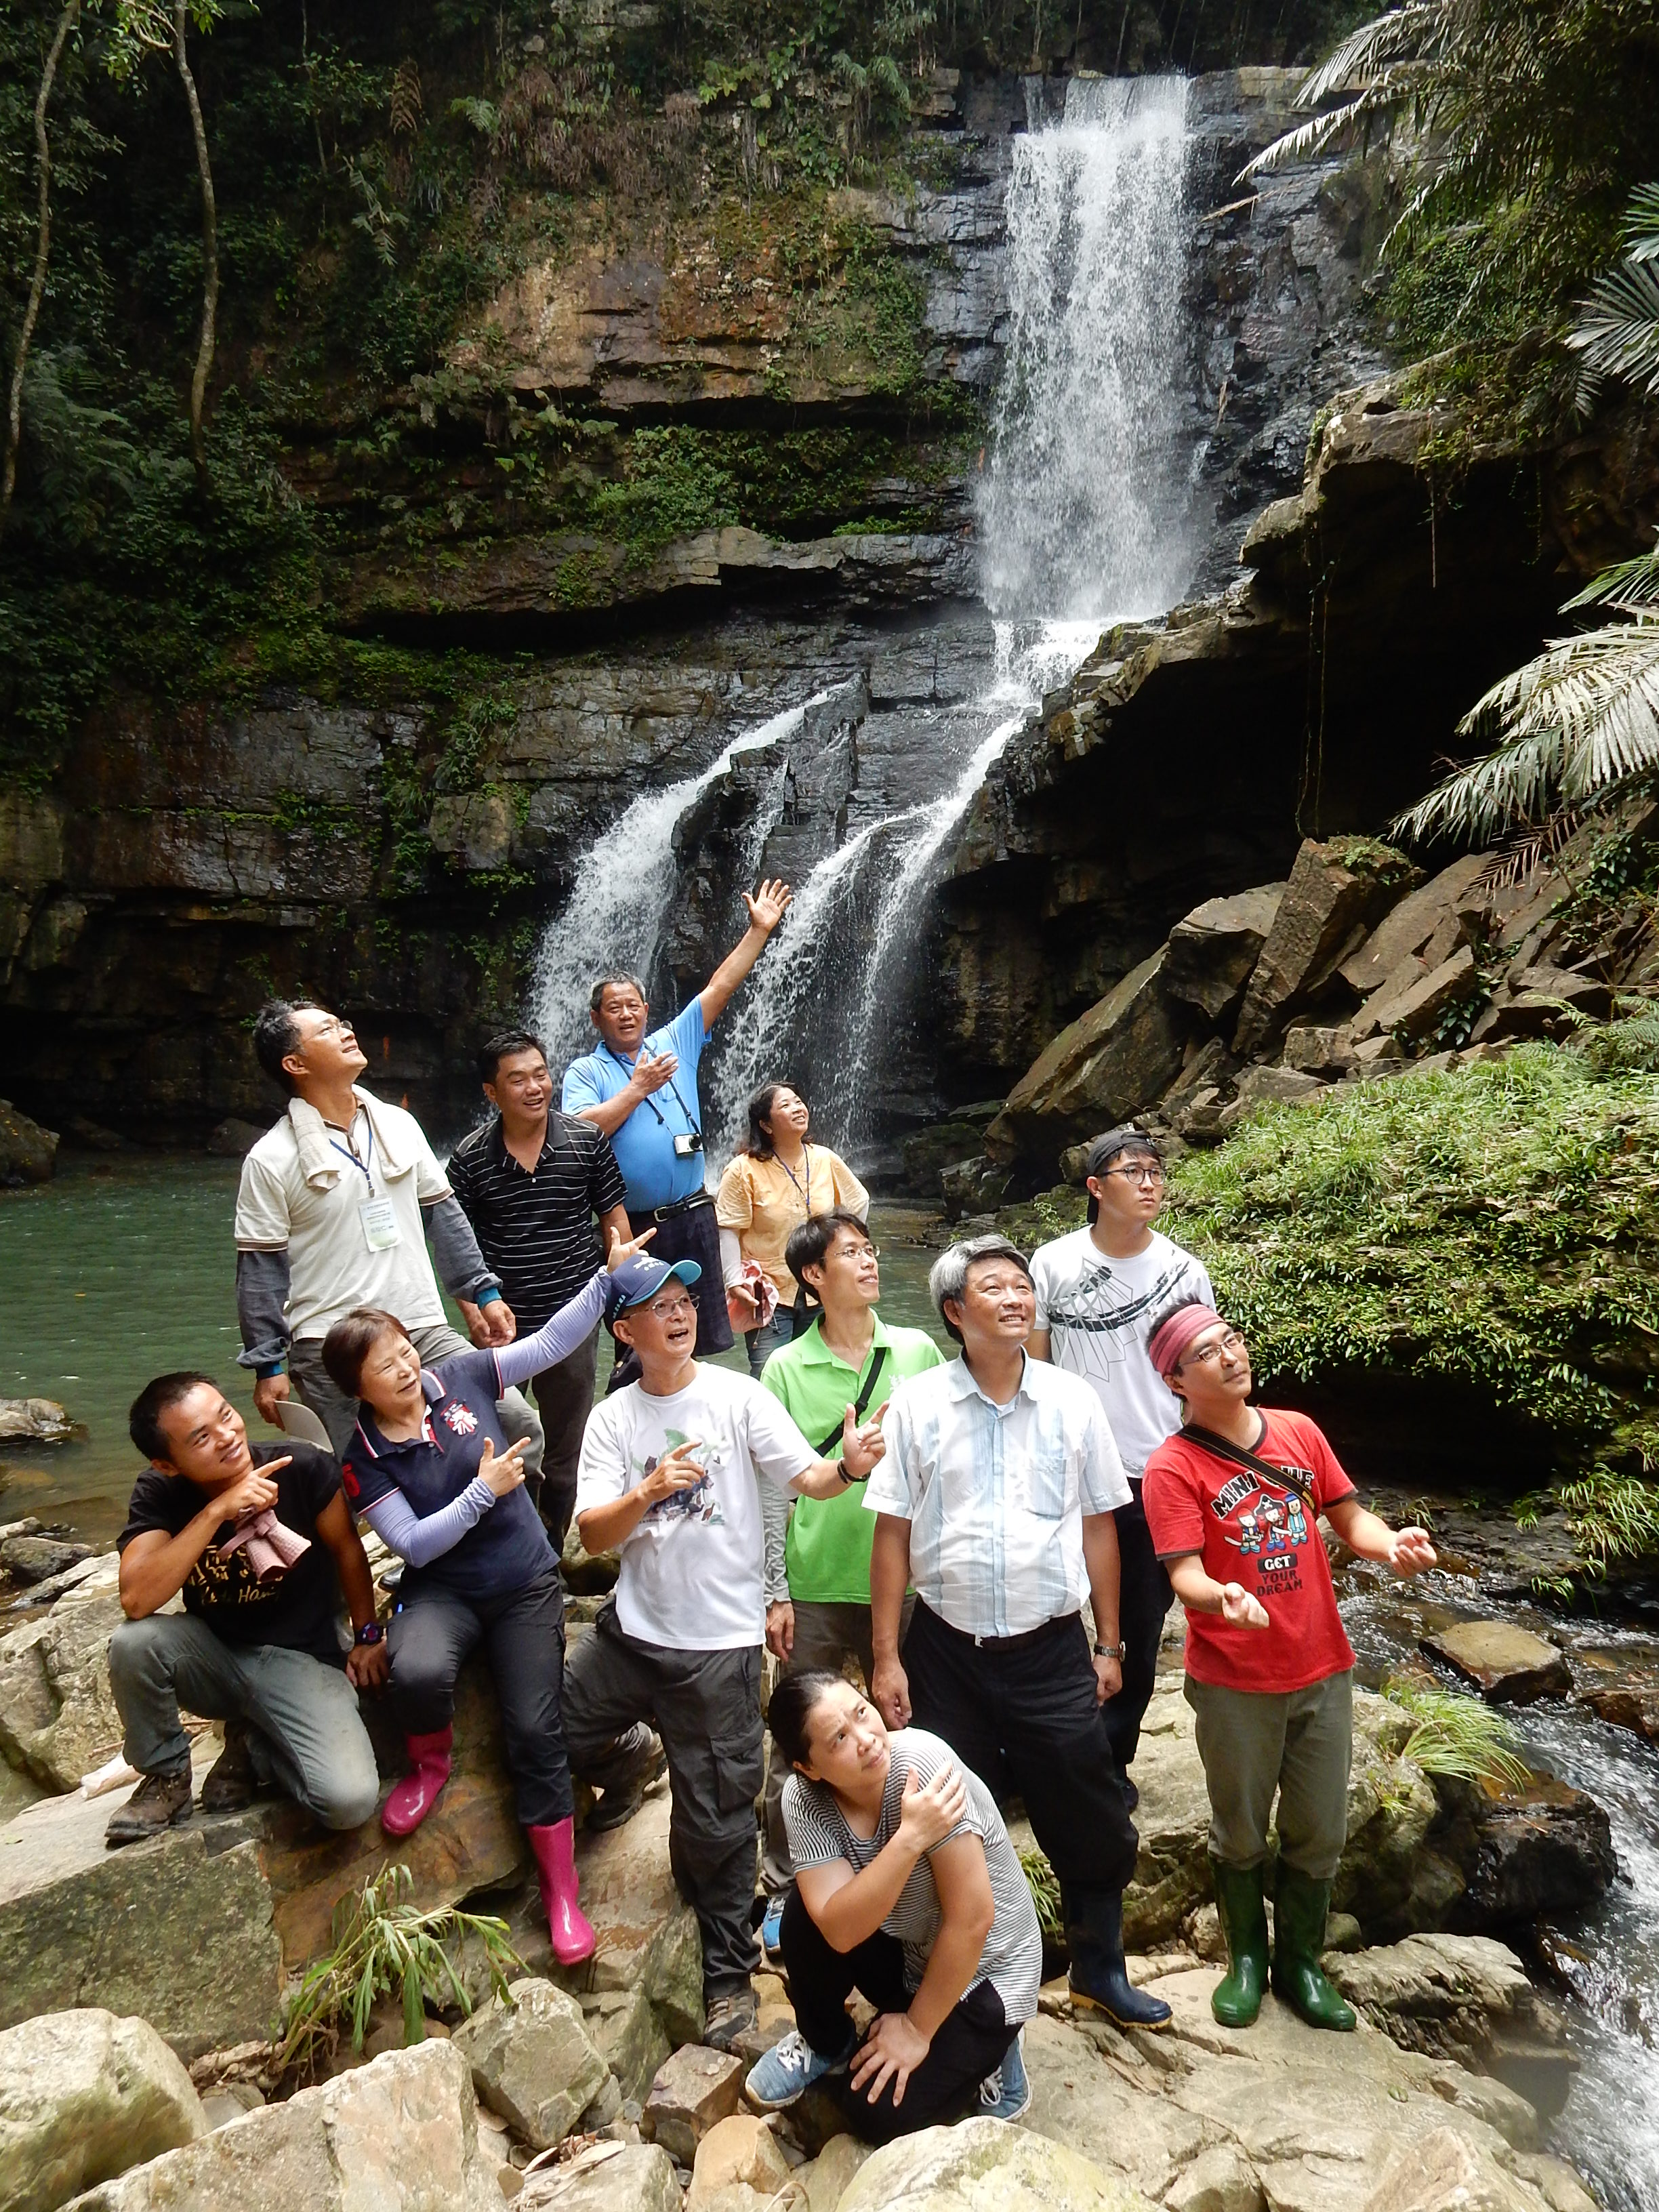 106年農業綠色旅遊及環境加值發展計畫「生態農遊導覽解說培訓(初階3)班」~圓滿結束-台灣生態教育農園協會